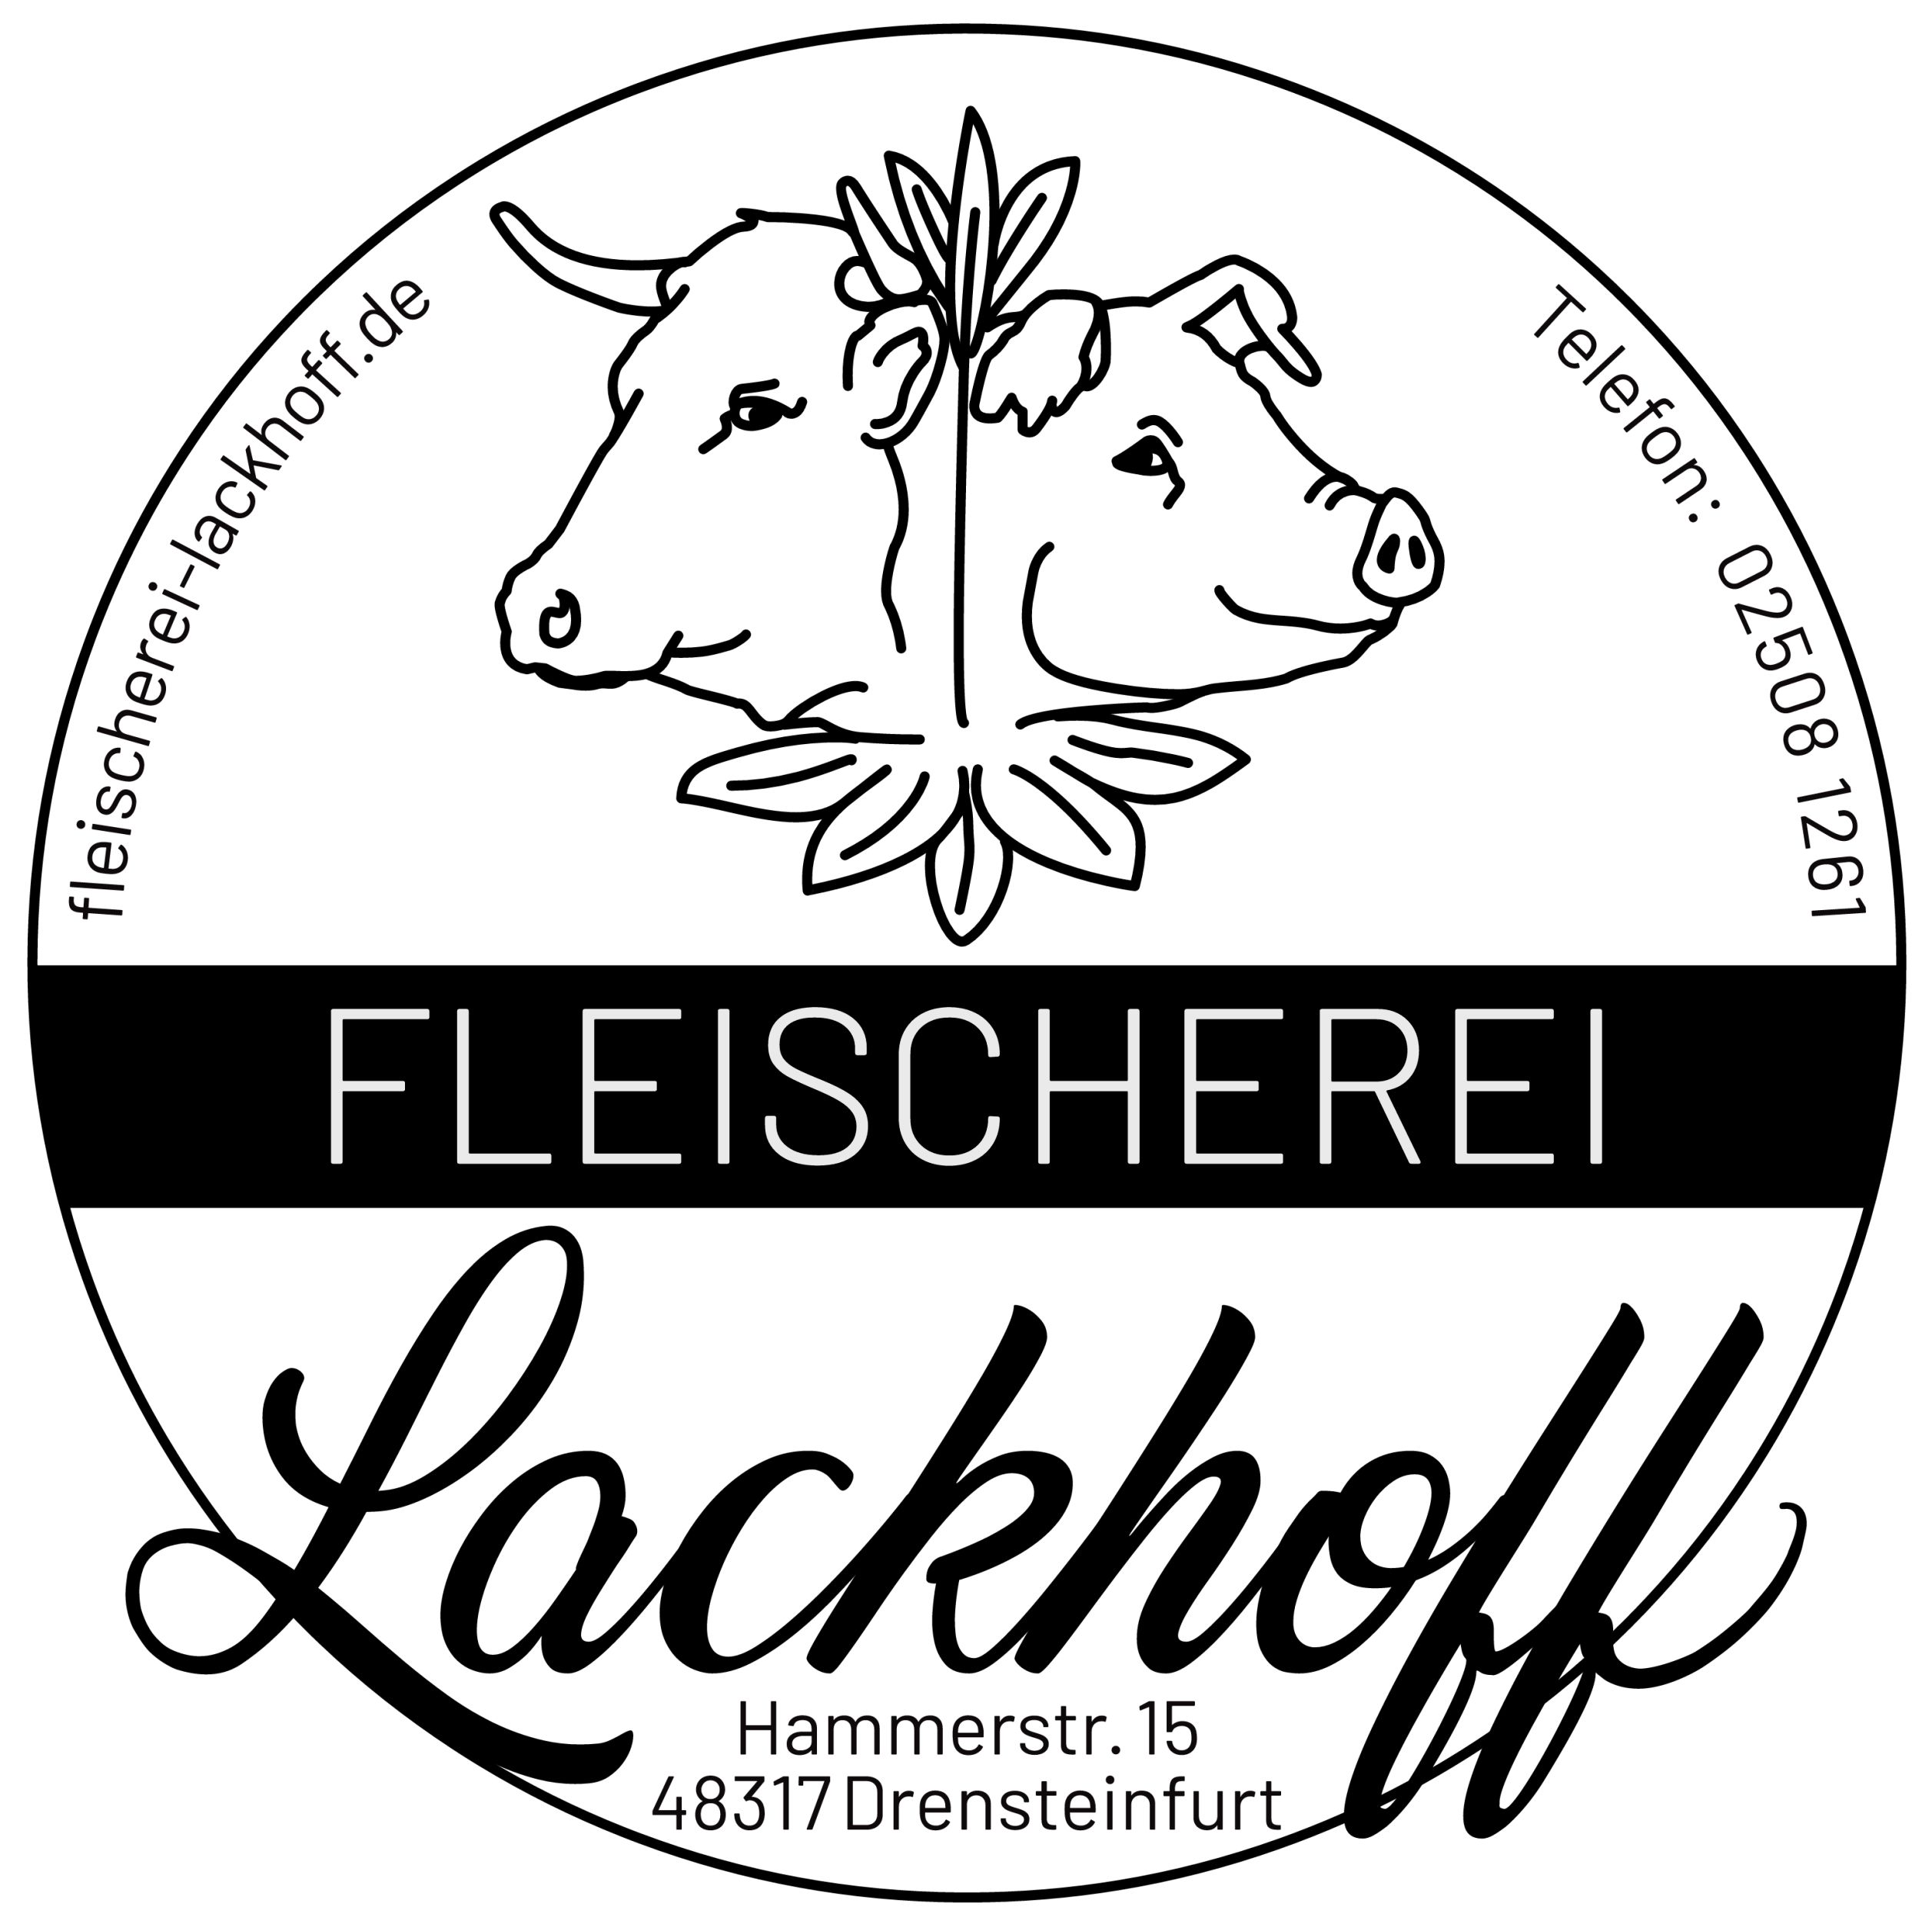 Fleischerei Lackhoff